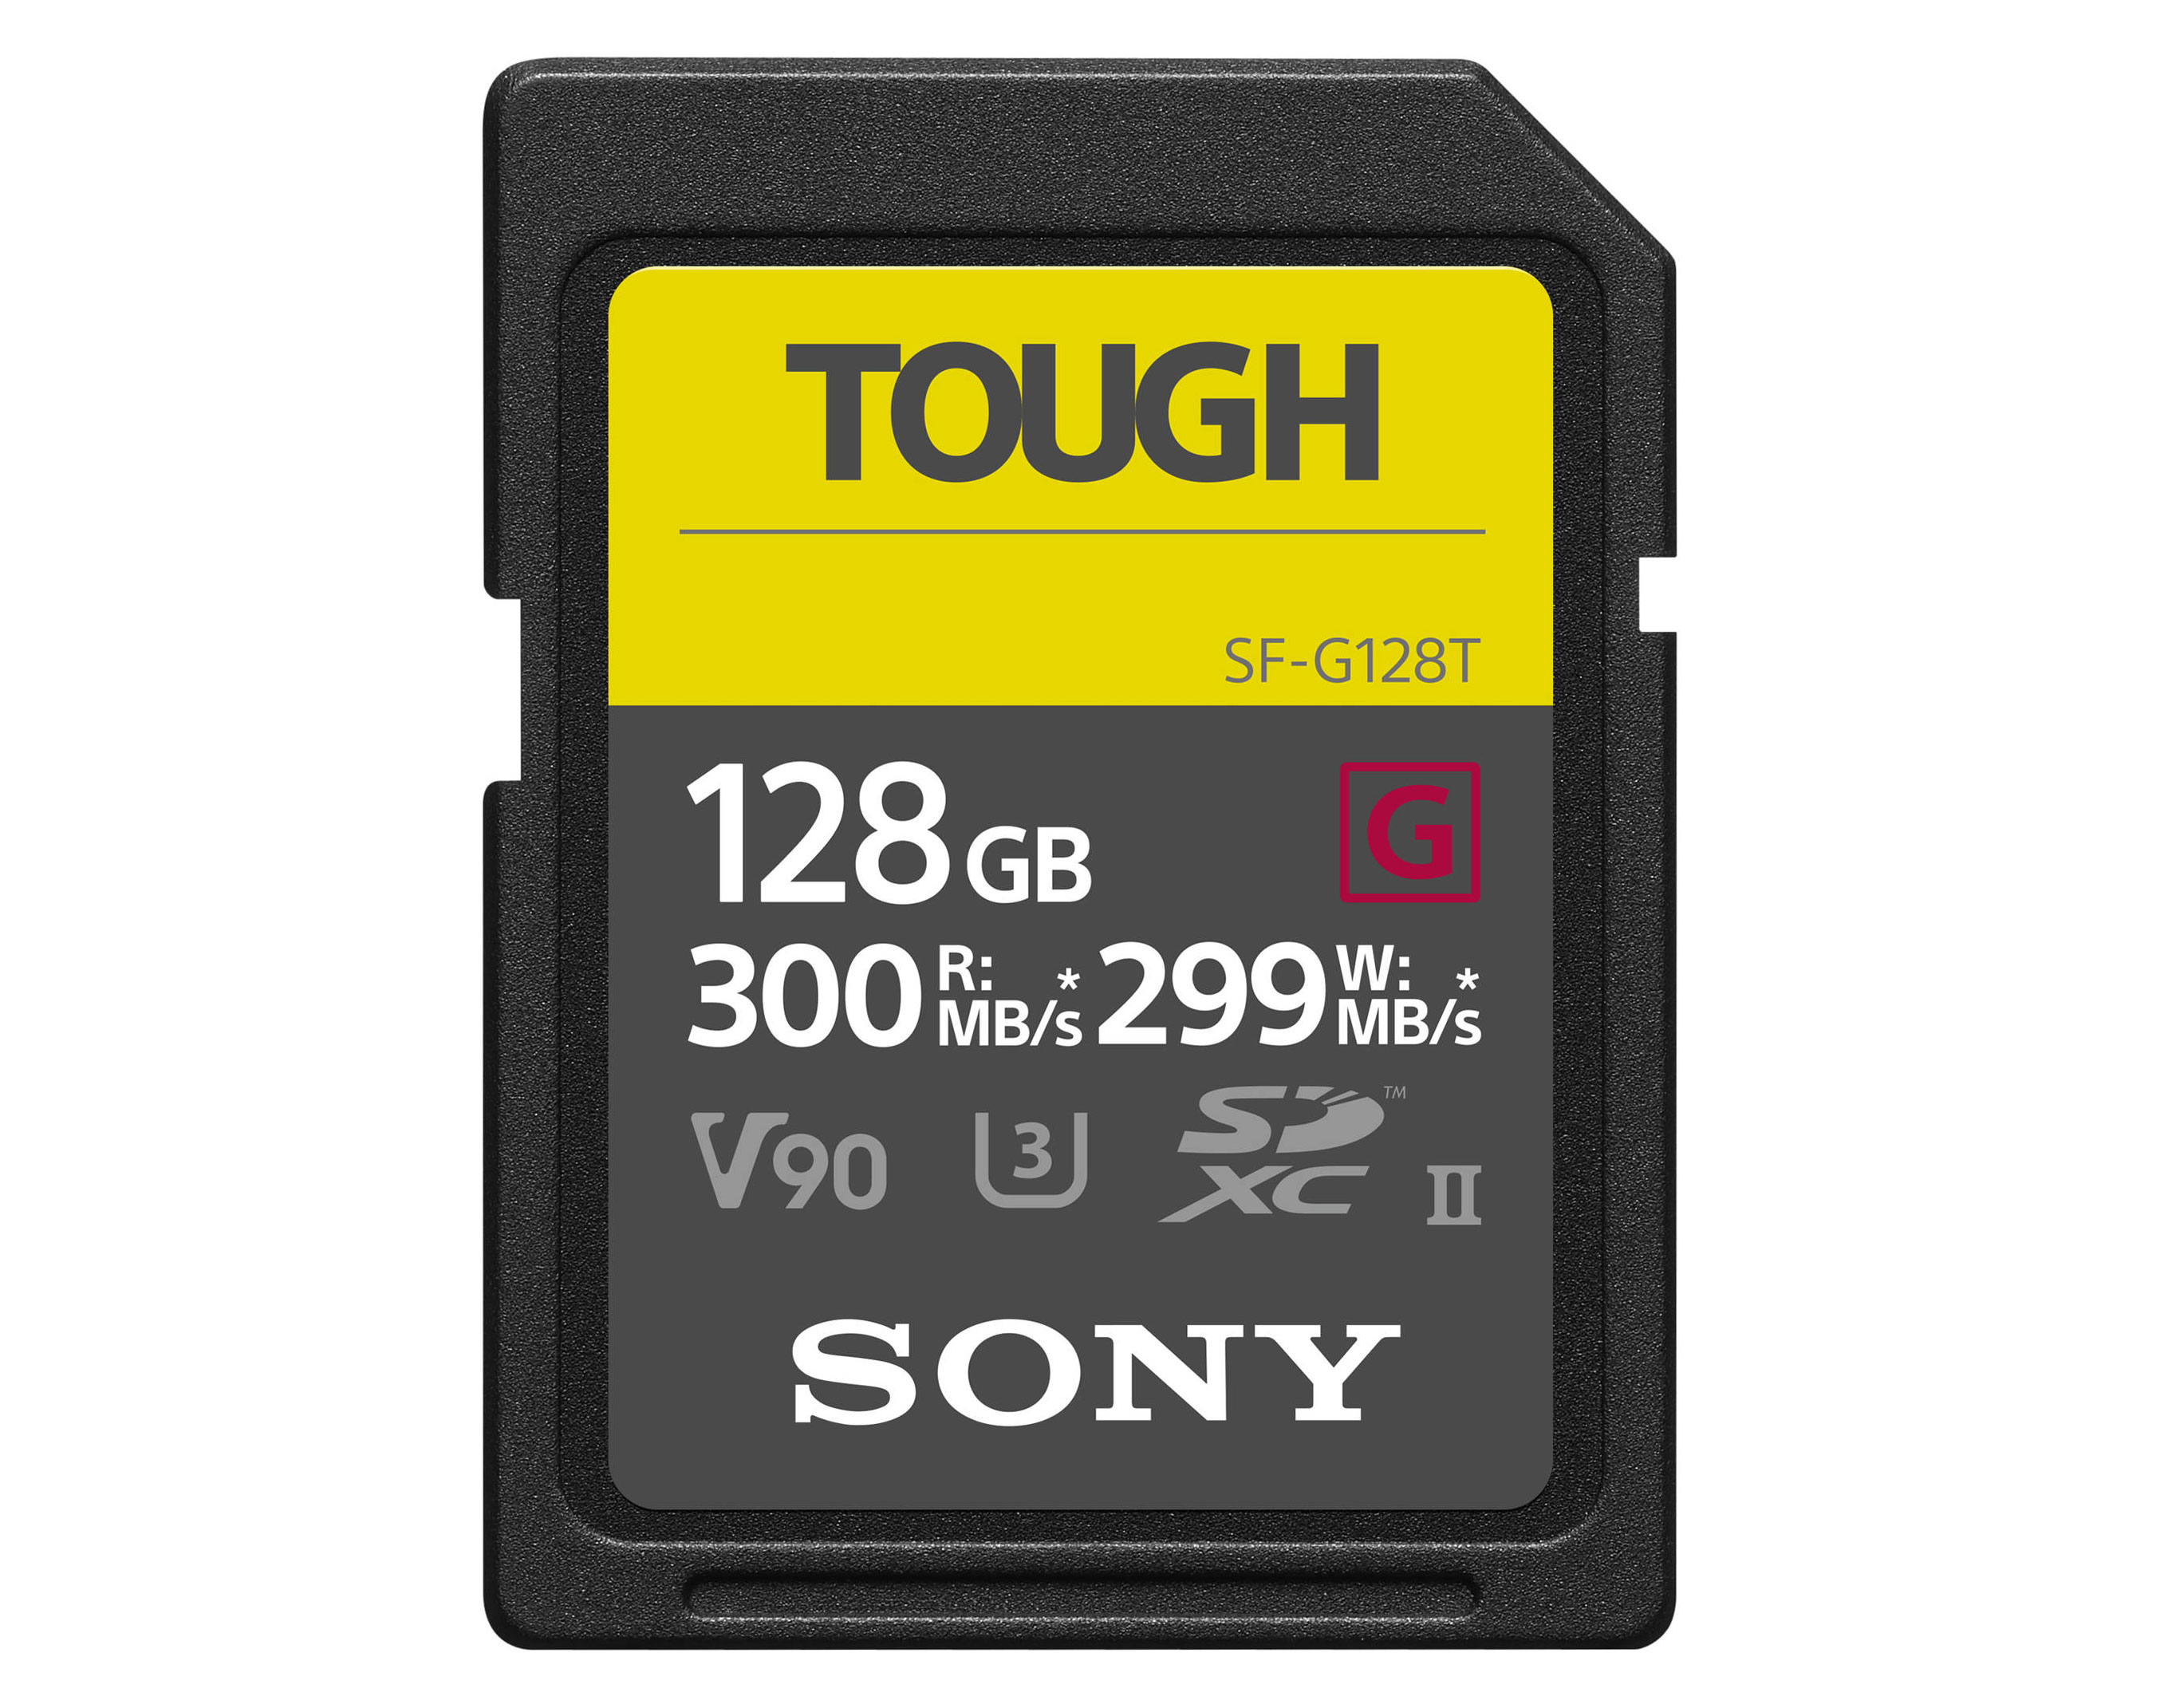 Sony SDXC Tough G 128GB